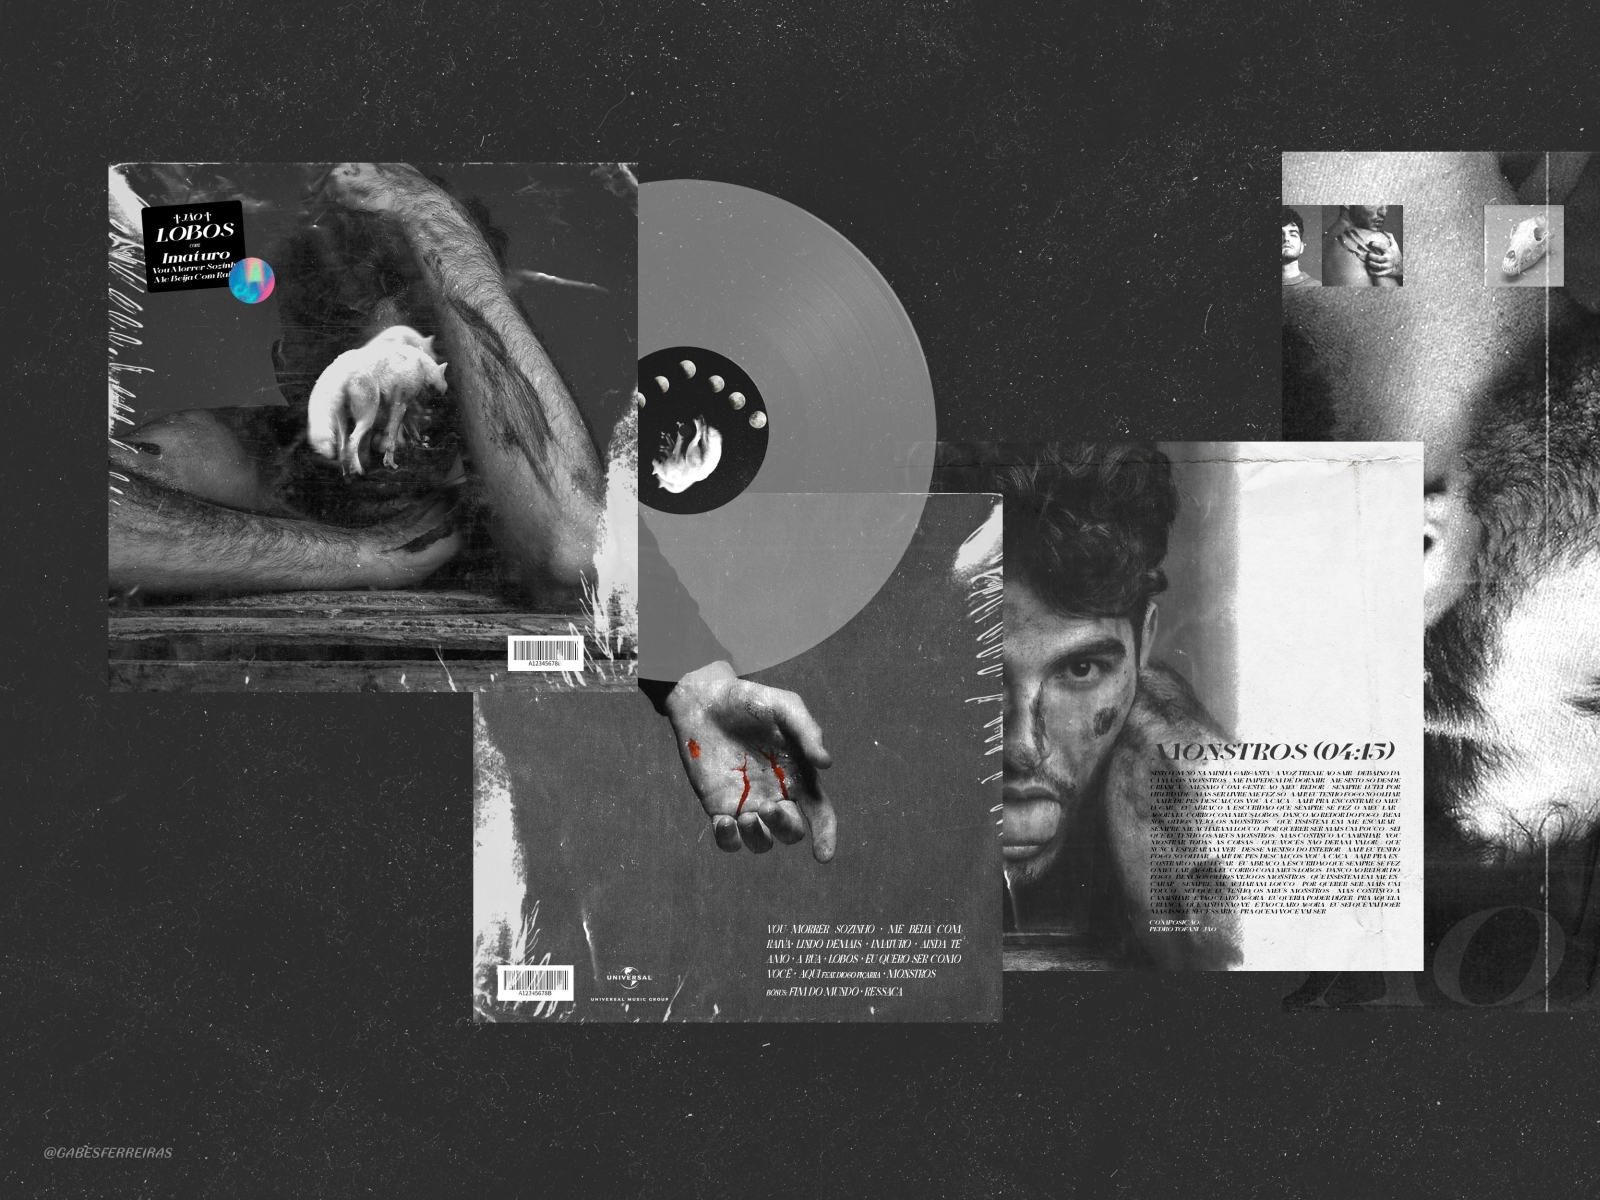 "Lobos" Vinyl Concept album album artwork album cover design